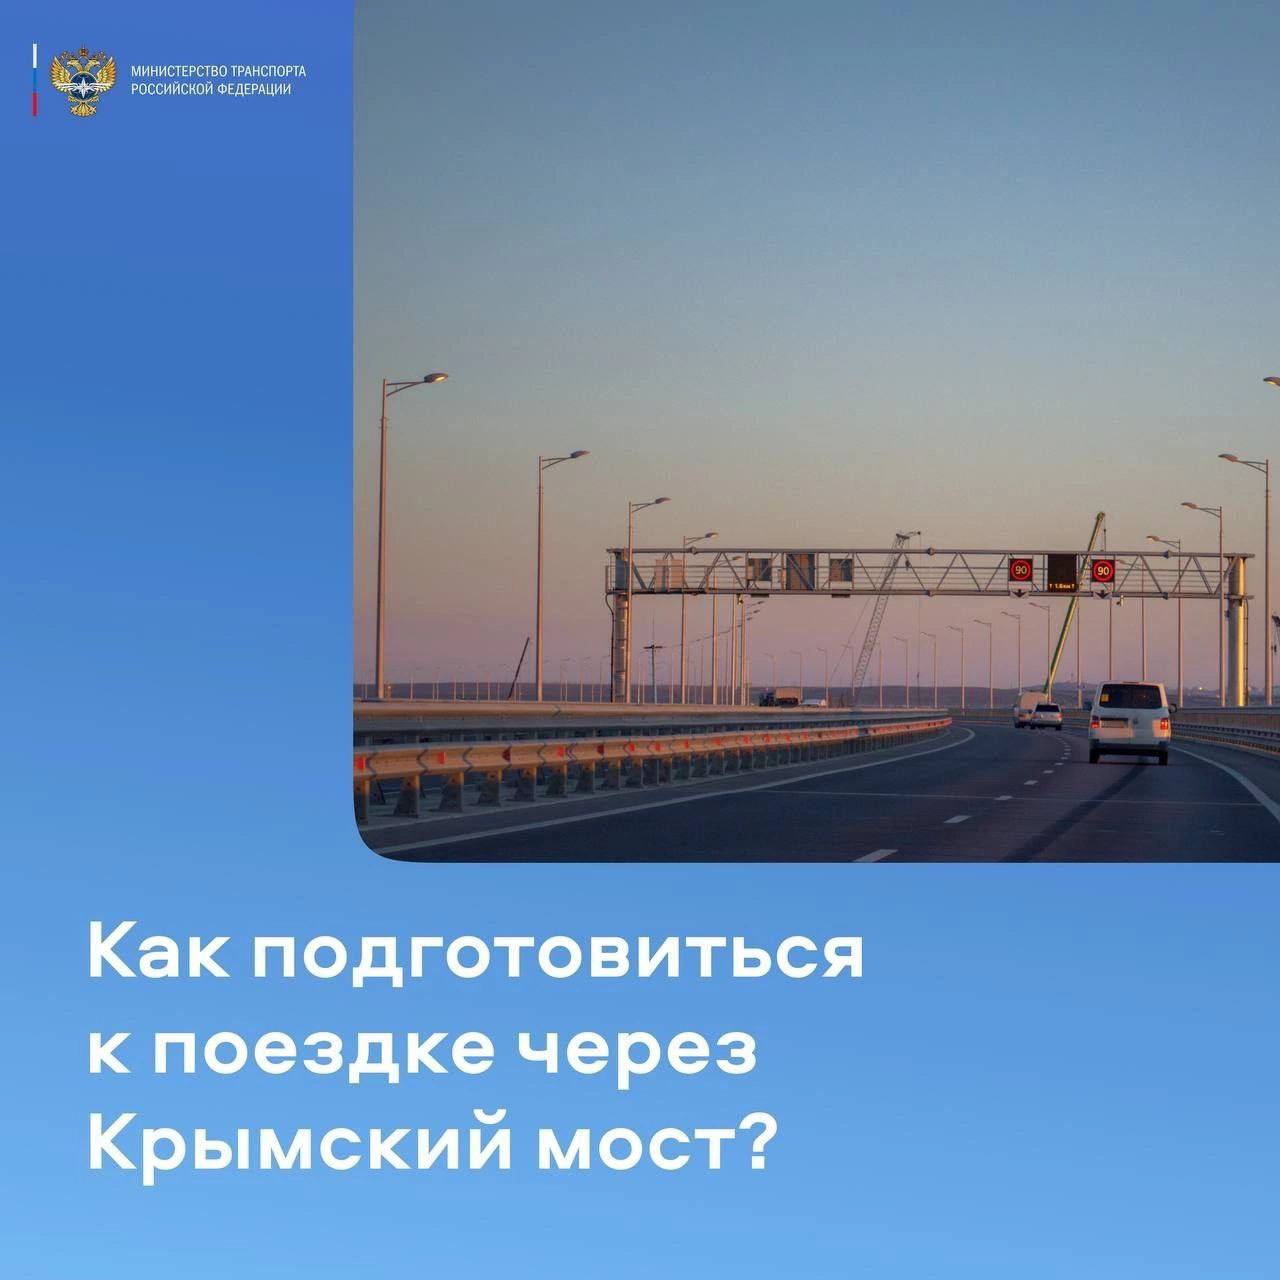 Проезд по Крымскому мосту: полезные советы туристам